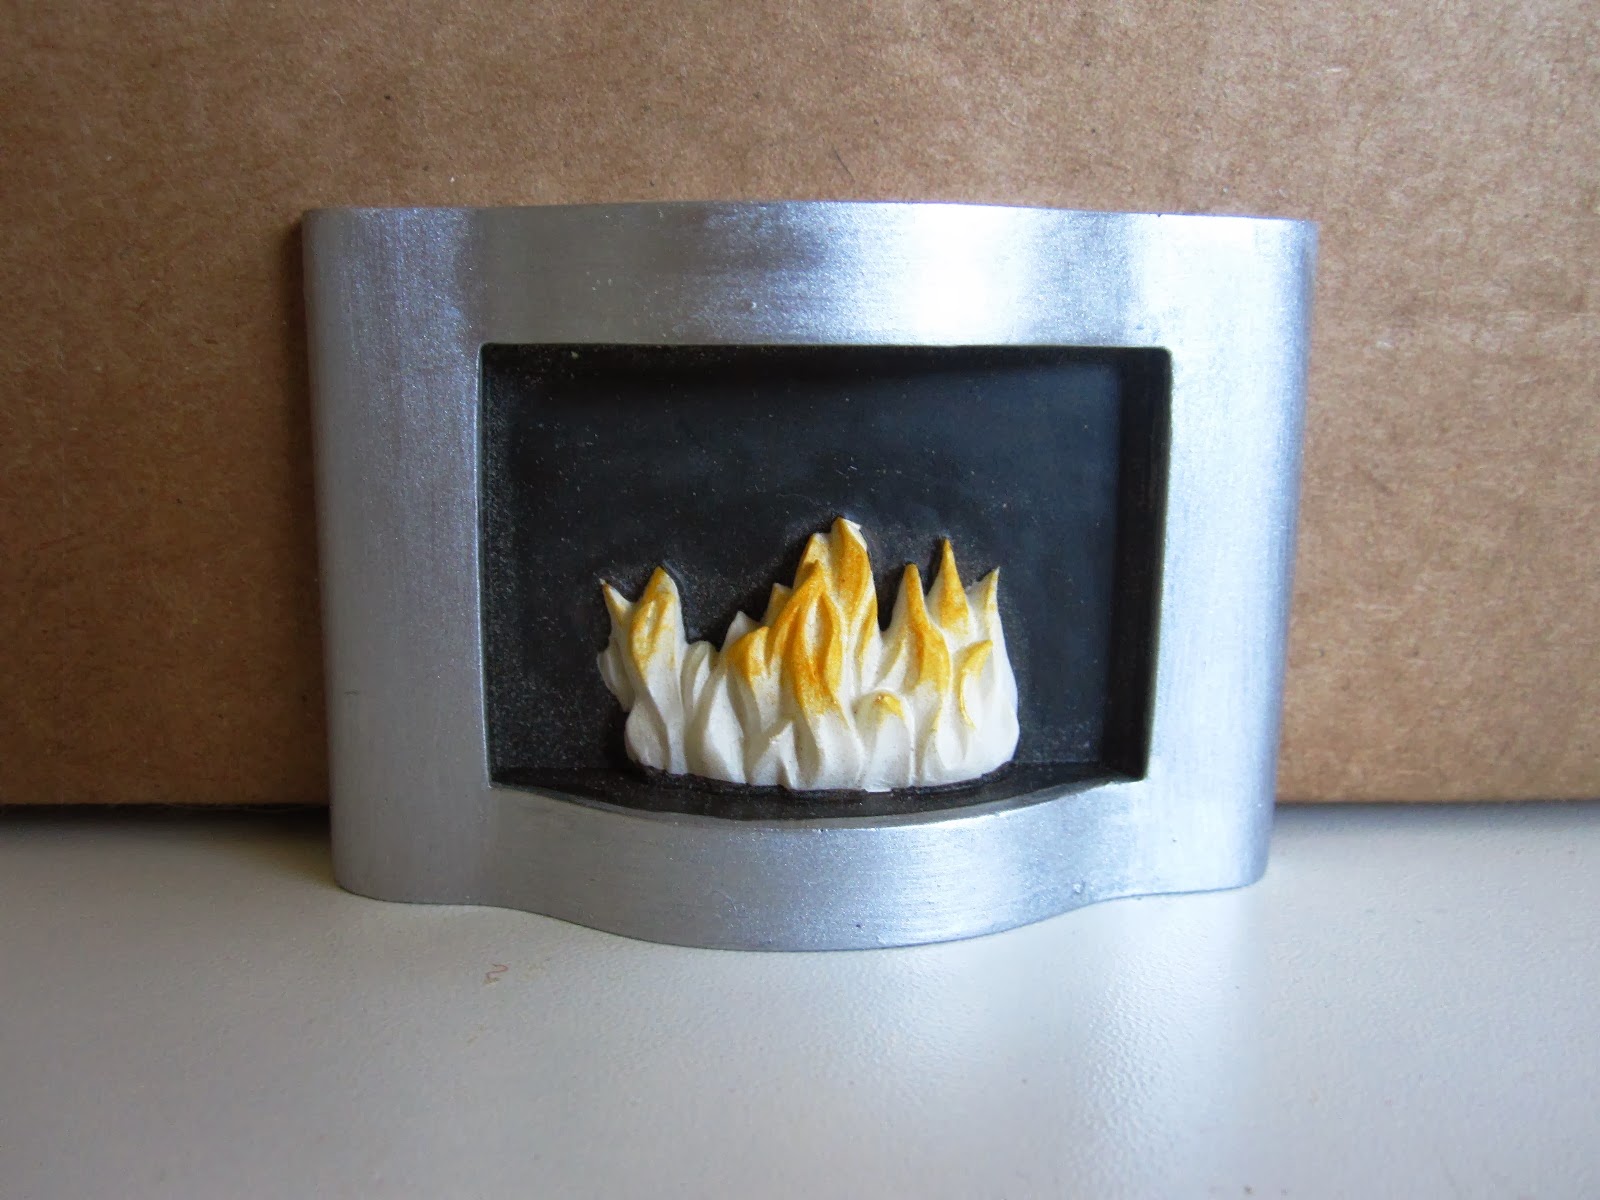 Modern resin miniature fireplace